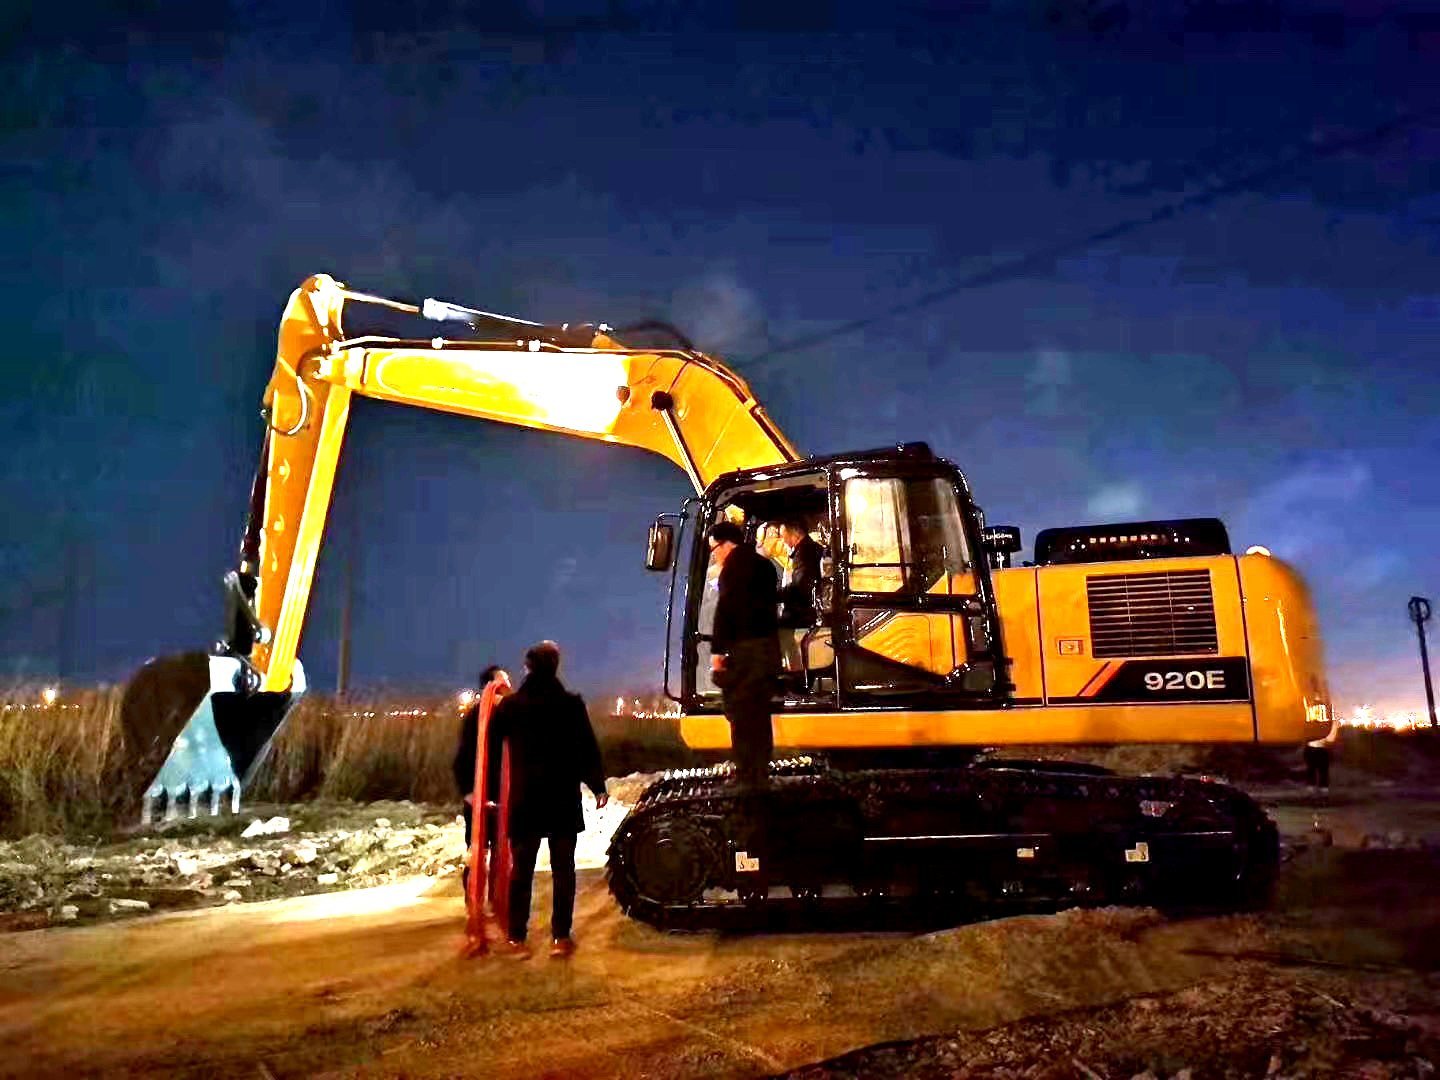 
                Liugong nuovo escavatore cingolato 920e da 20 tonnellate in Pakistan
            